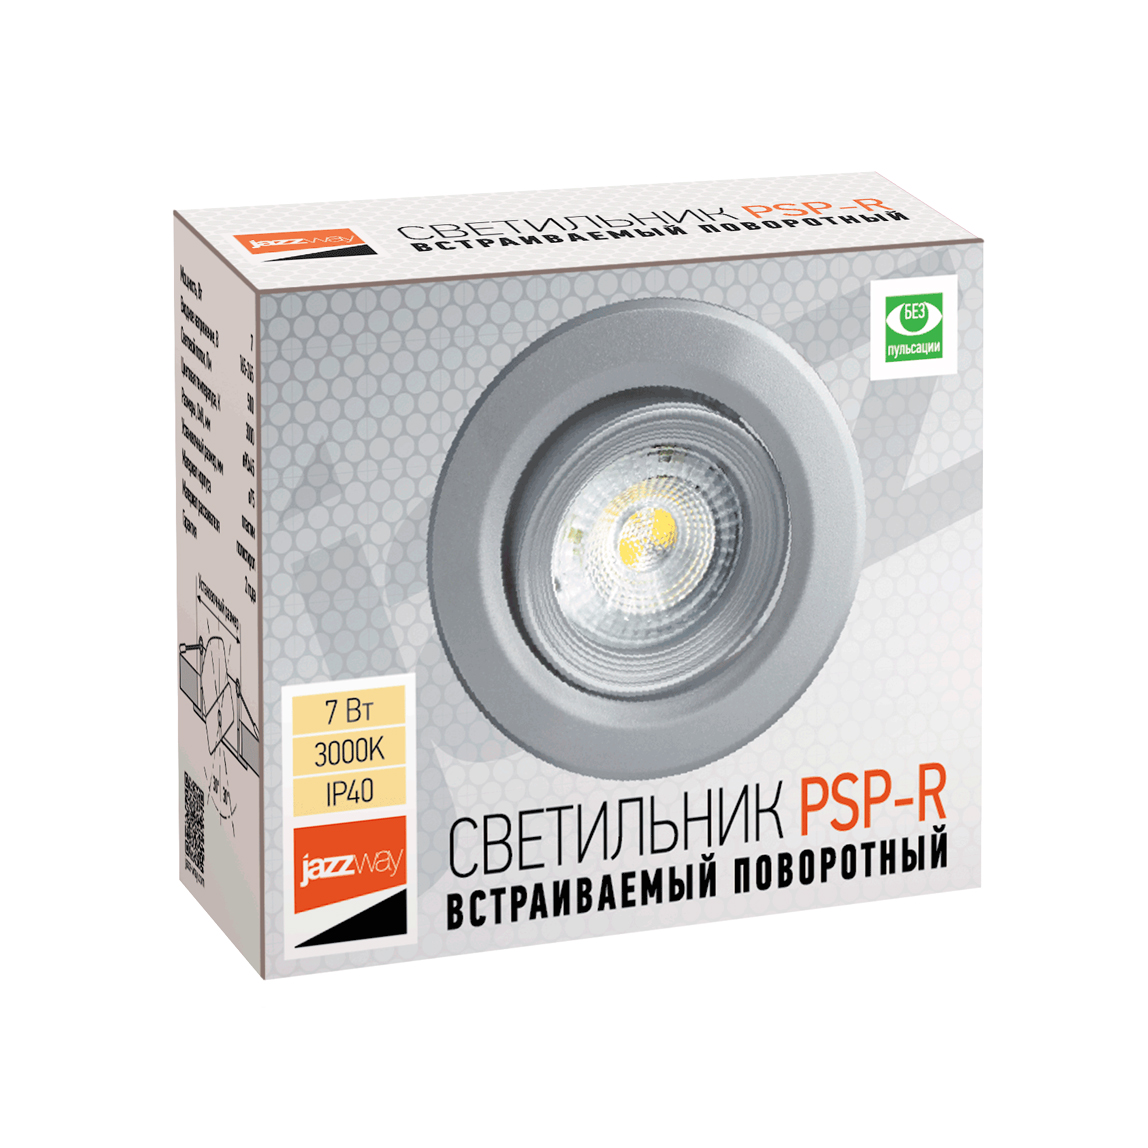 Cветильник светодиодный встраиваемый PSP-R PSP-R90447W 3000K 38°SILVIP40